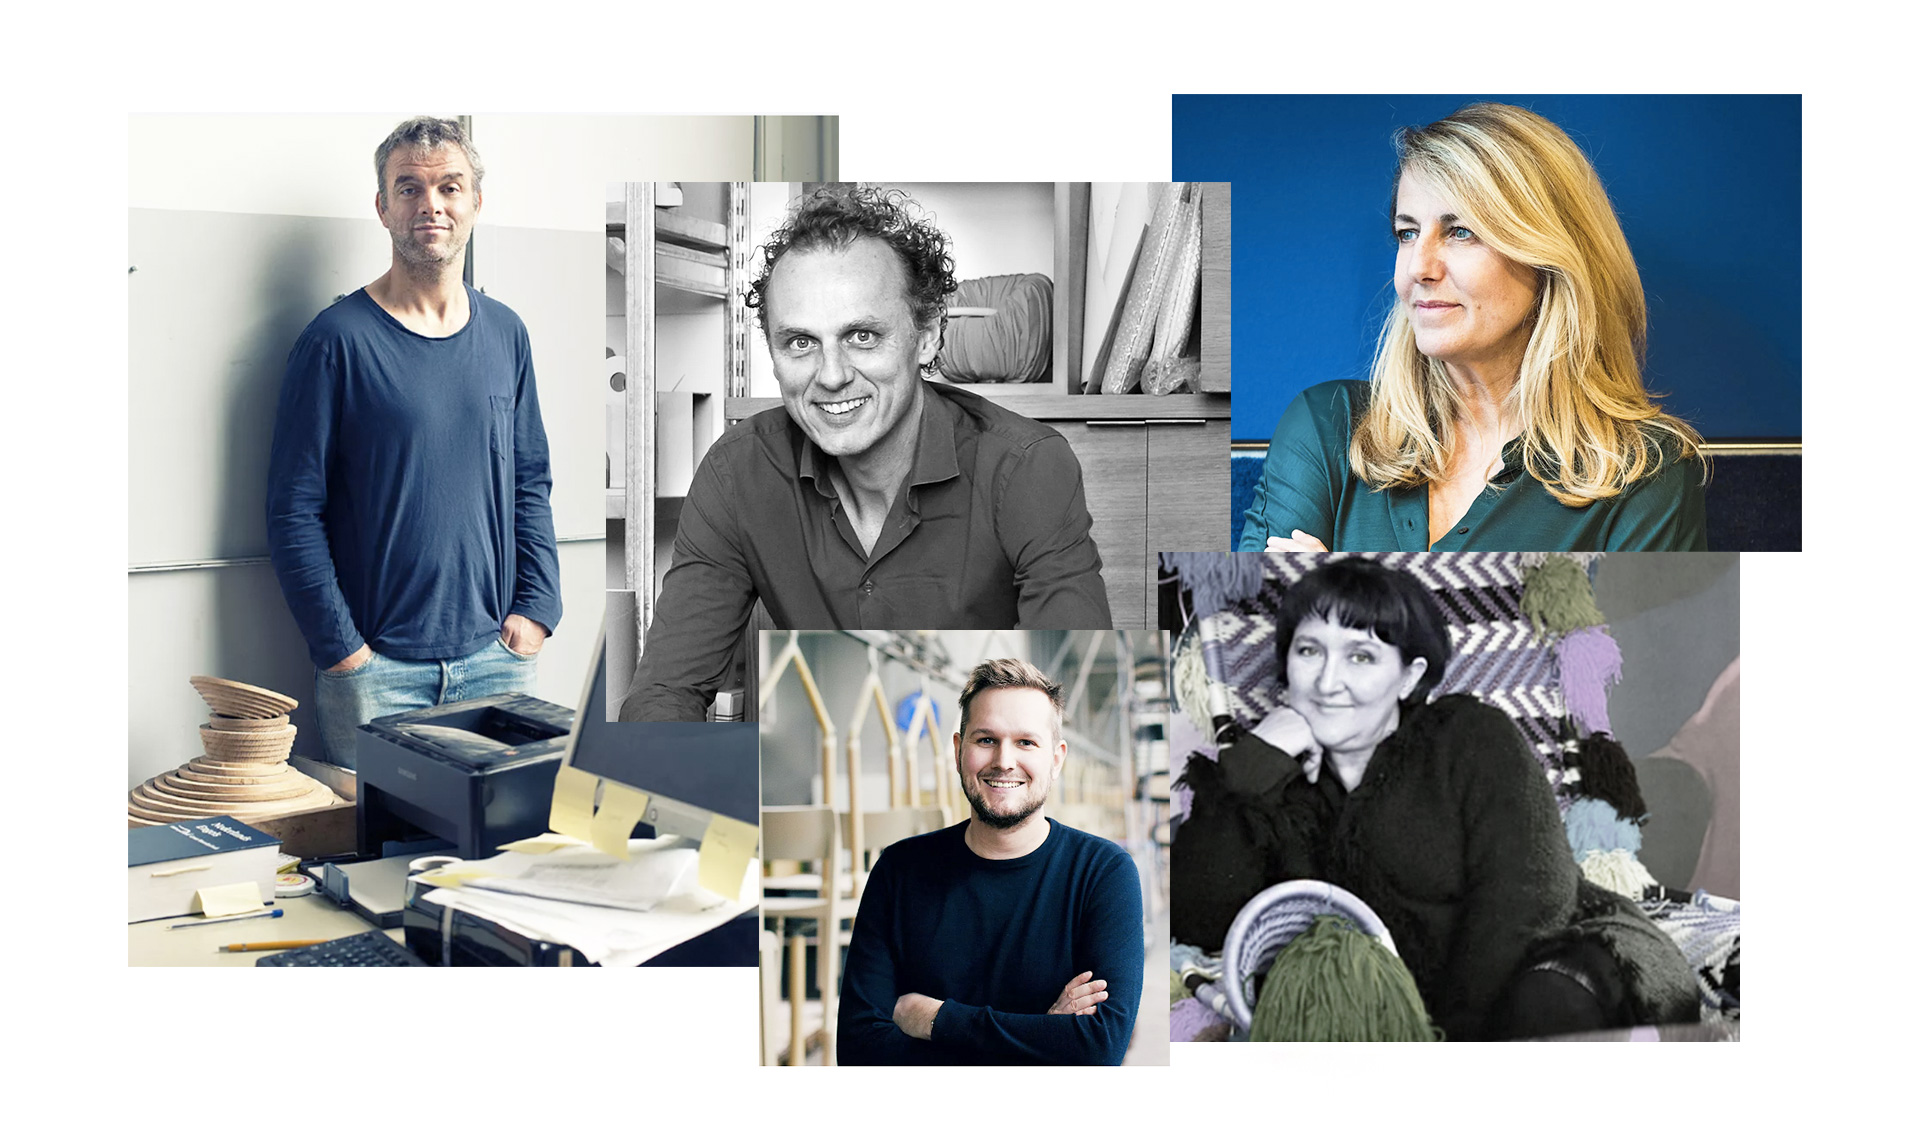 5 лидеров дизайн-индустрии о коронавирусе